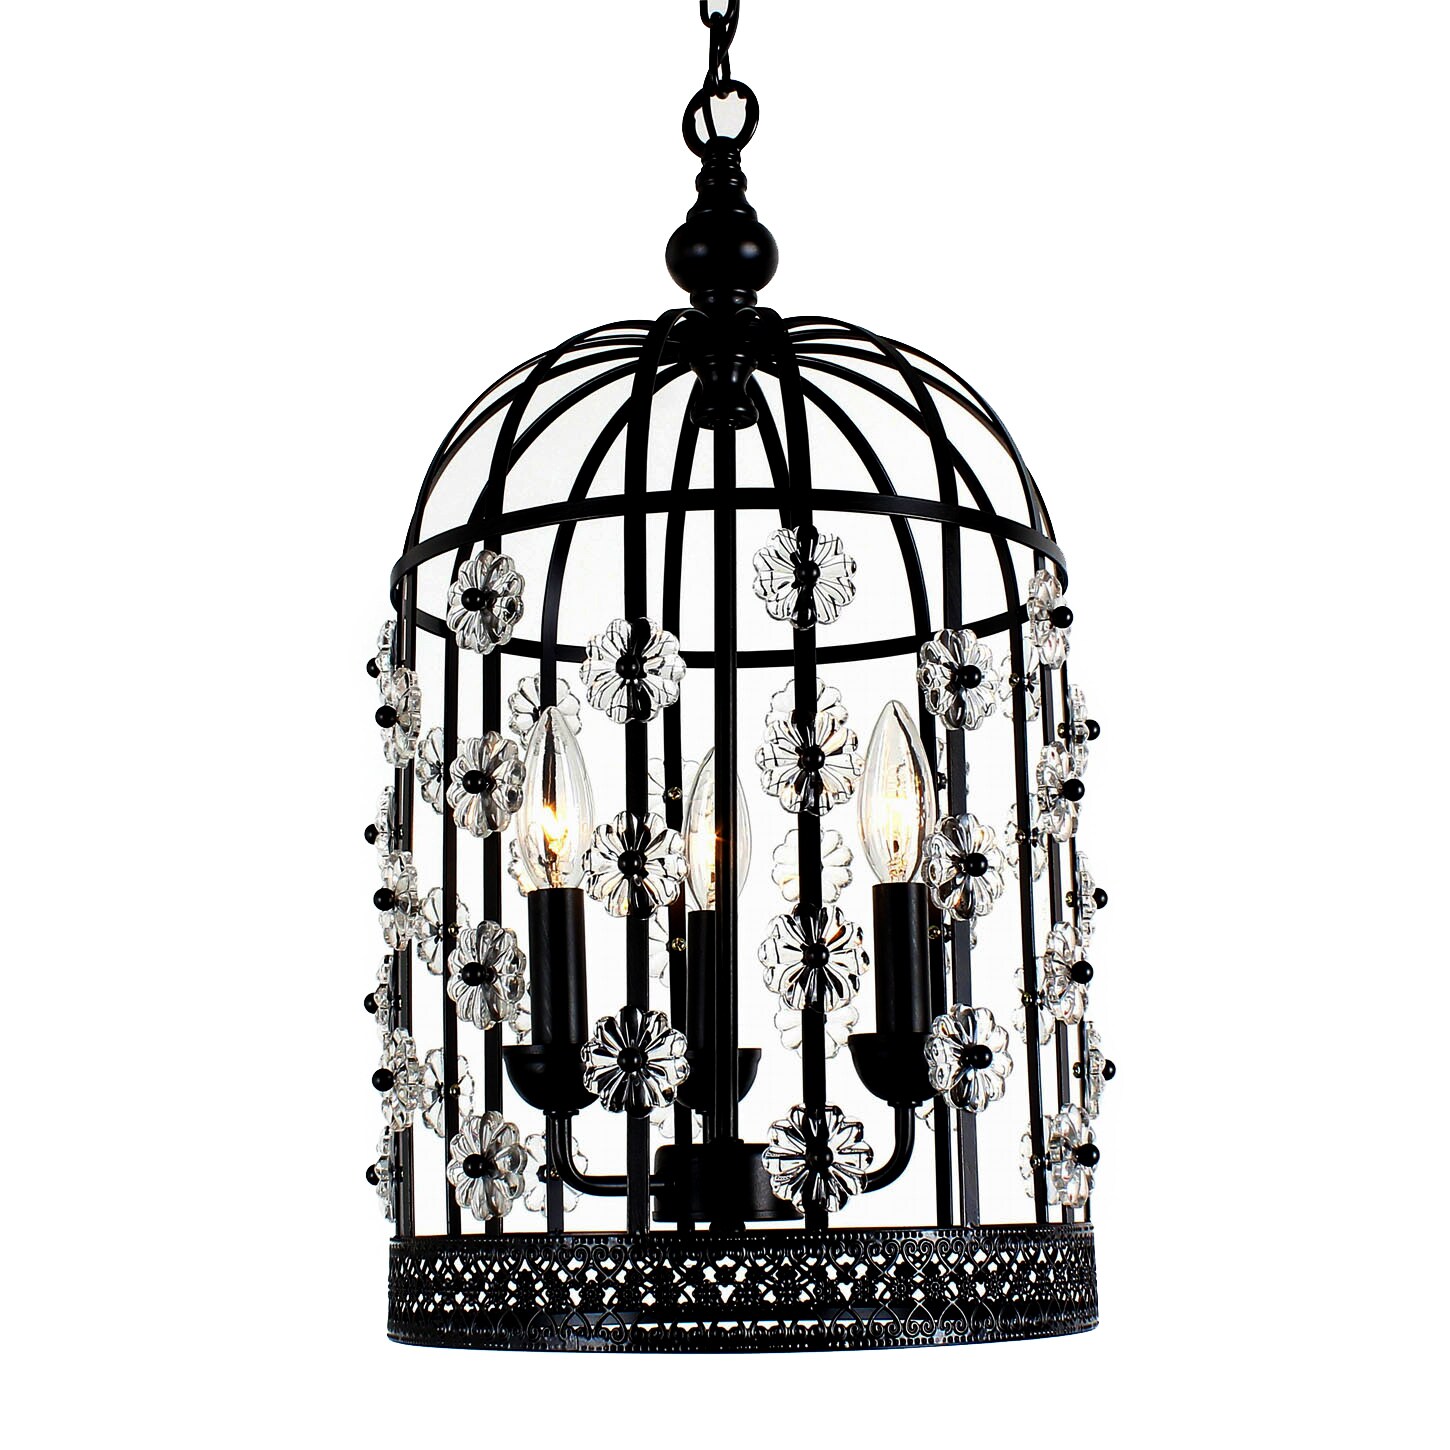 Chic Bird Cage Lantern 3 light Chandelier